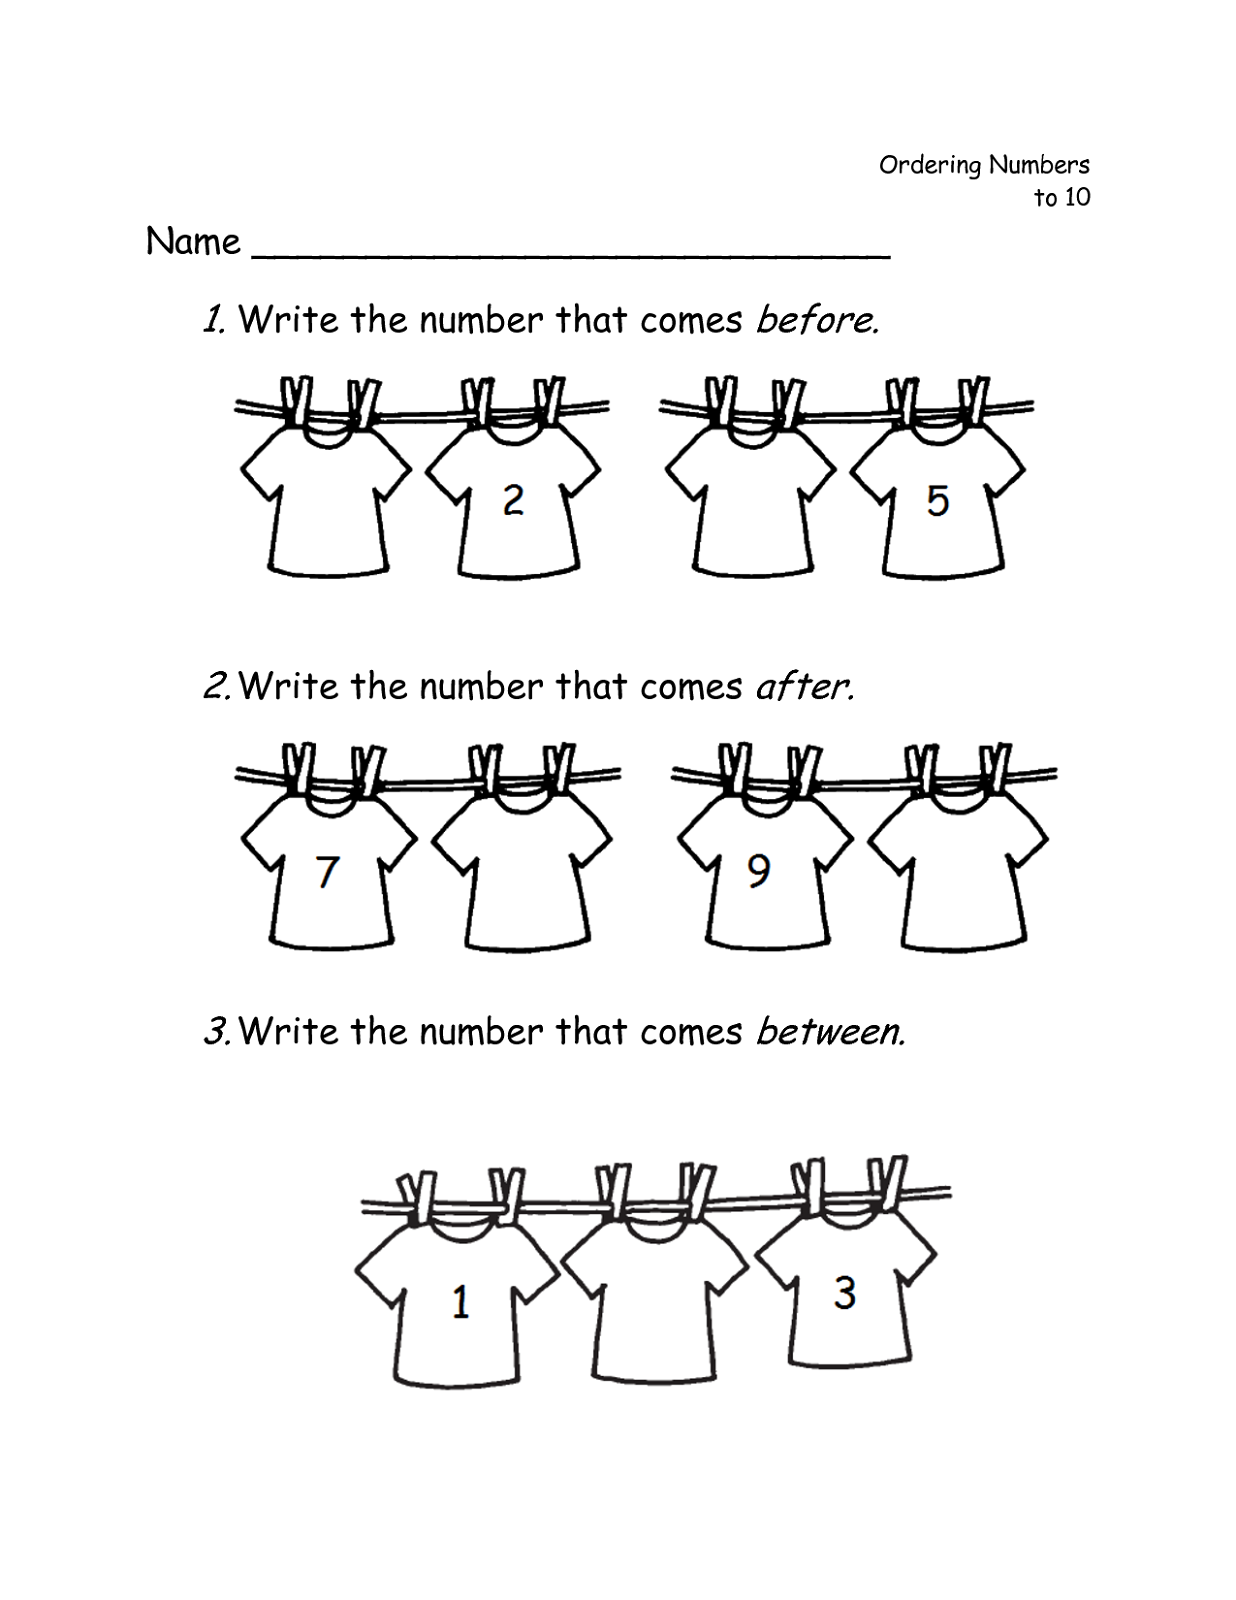 kindergarten-counting-worksheets-superstar-worksheets